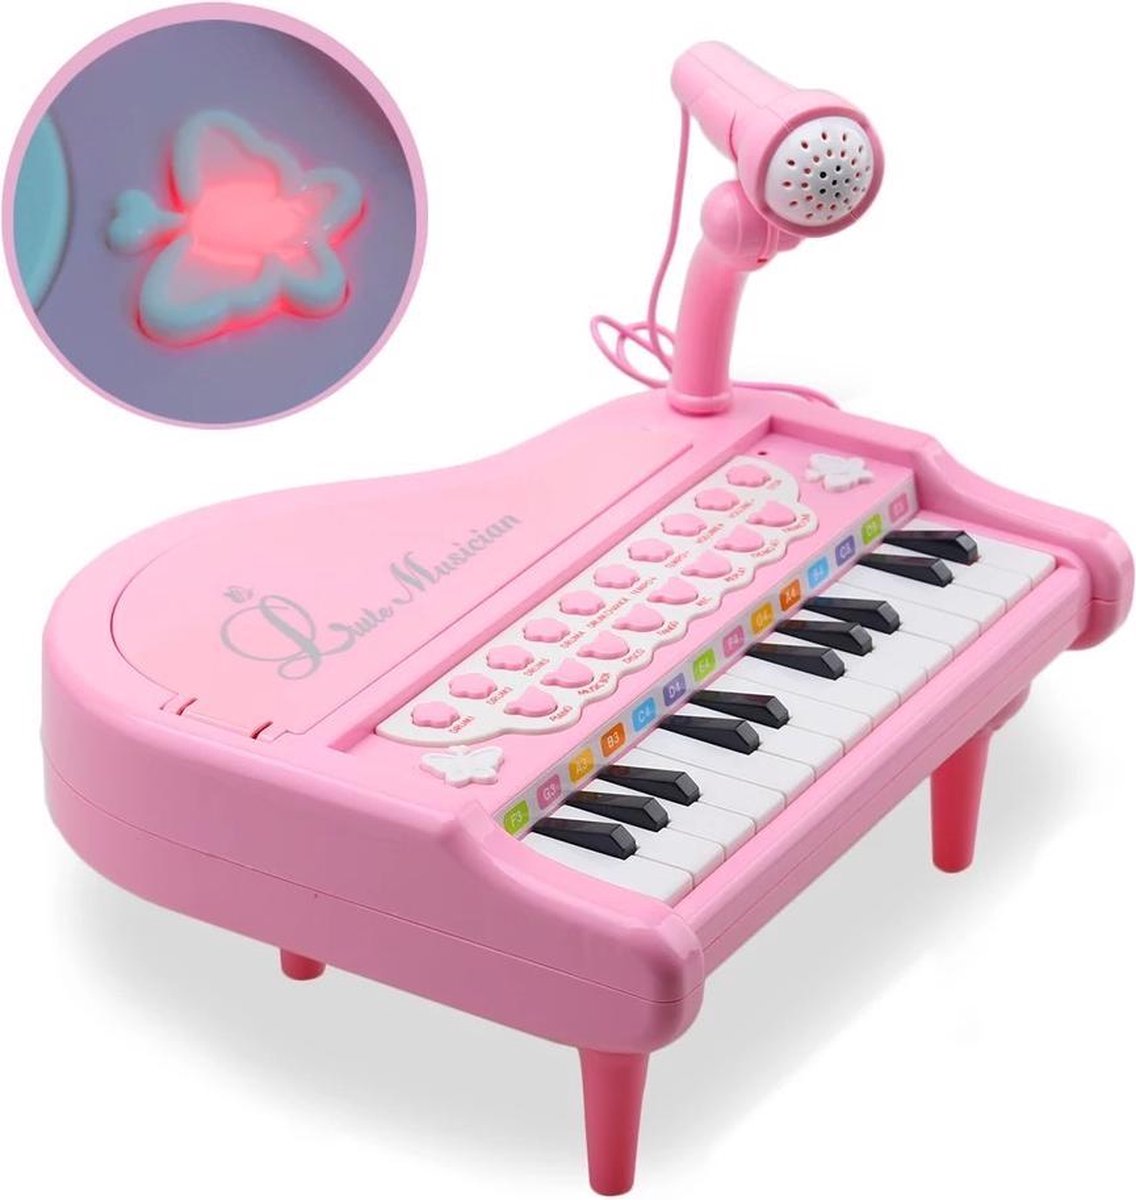 Jouets de piano rose pour les filles de 1 an et plus Cadeaux d